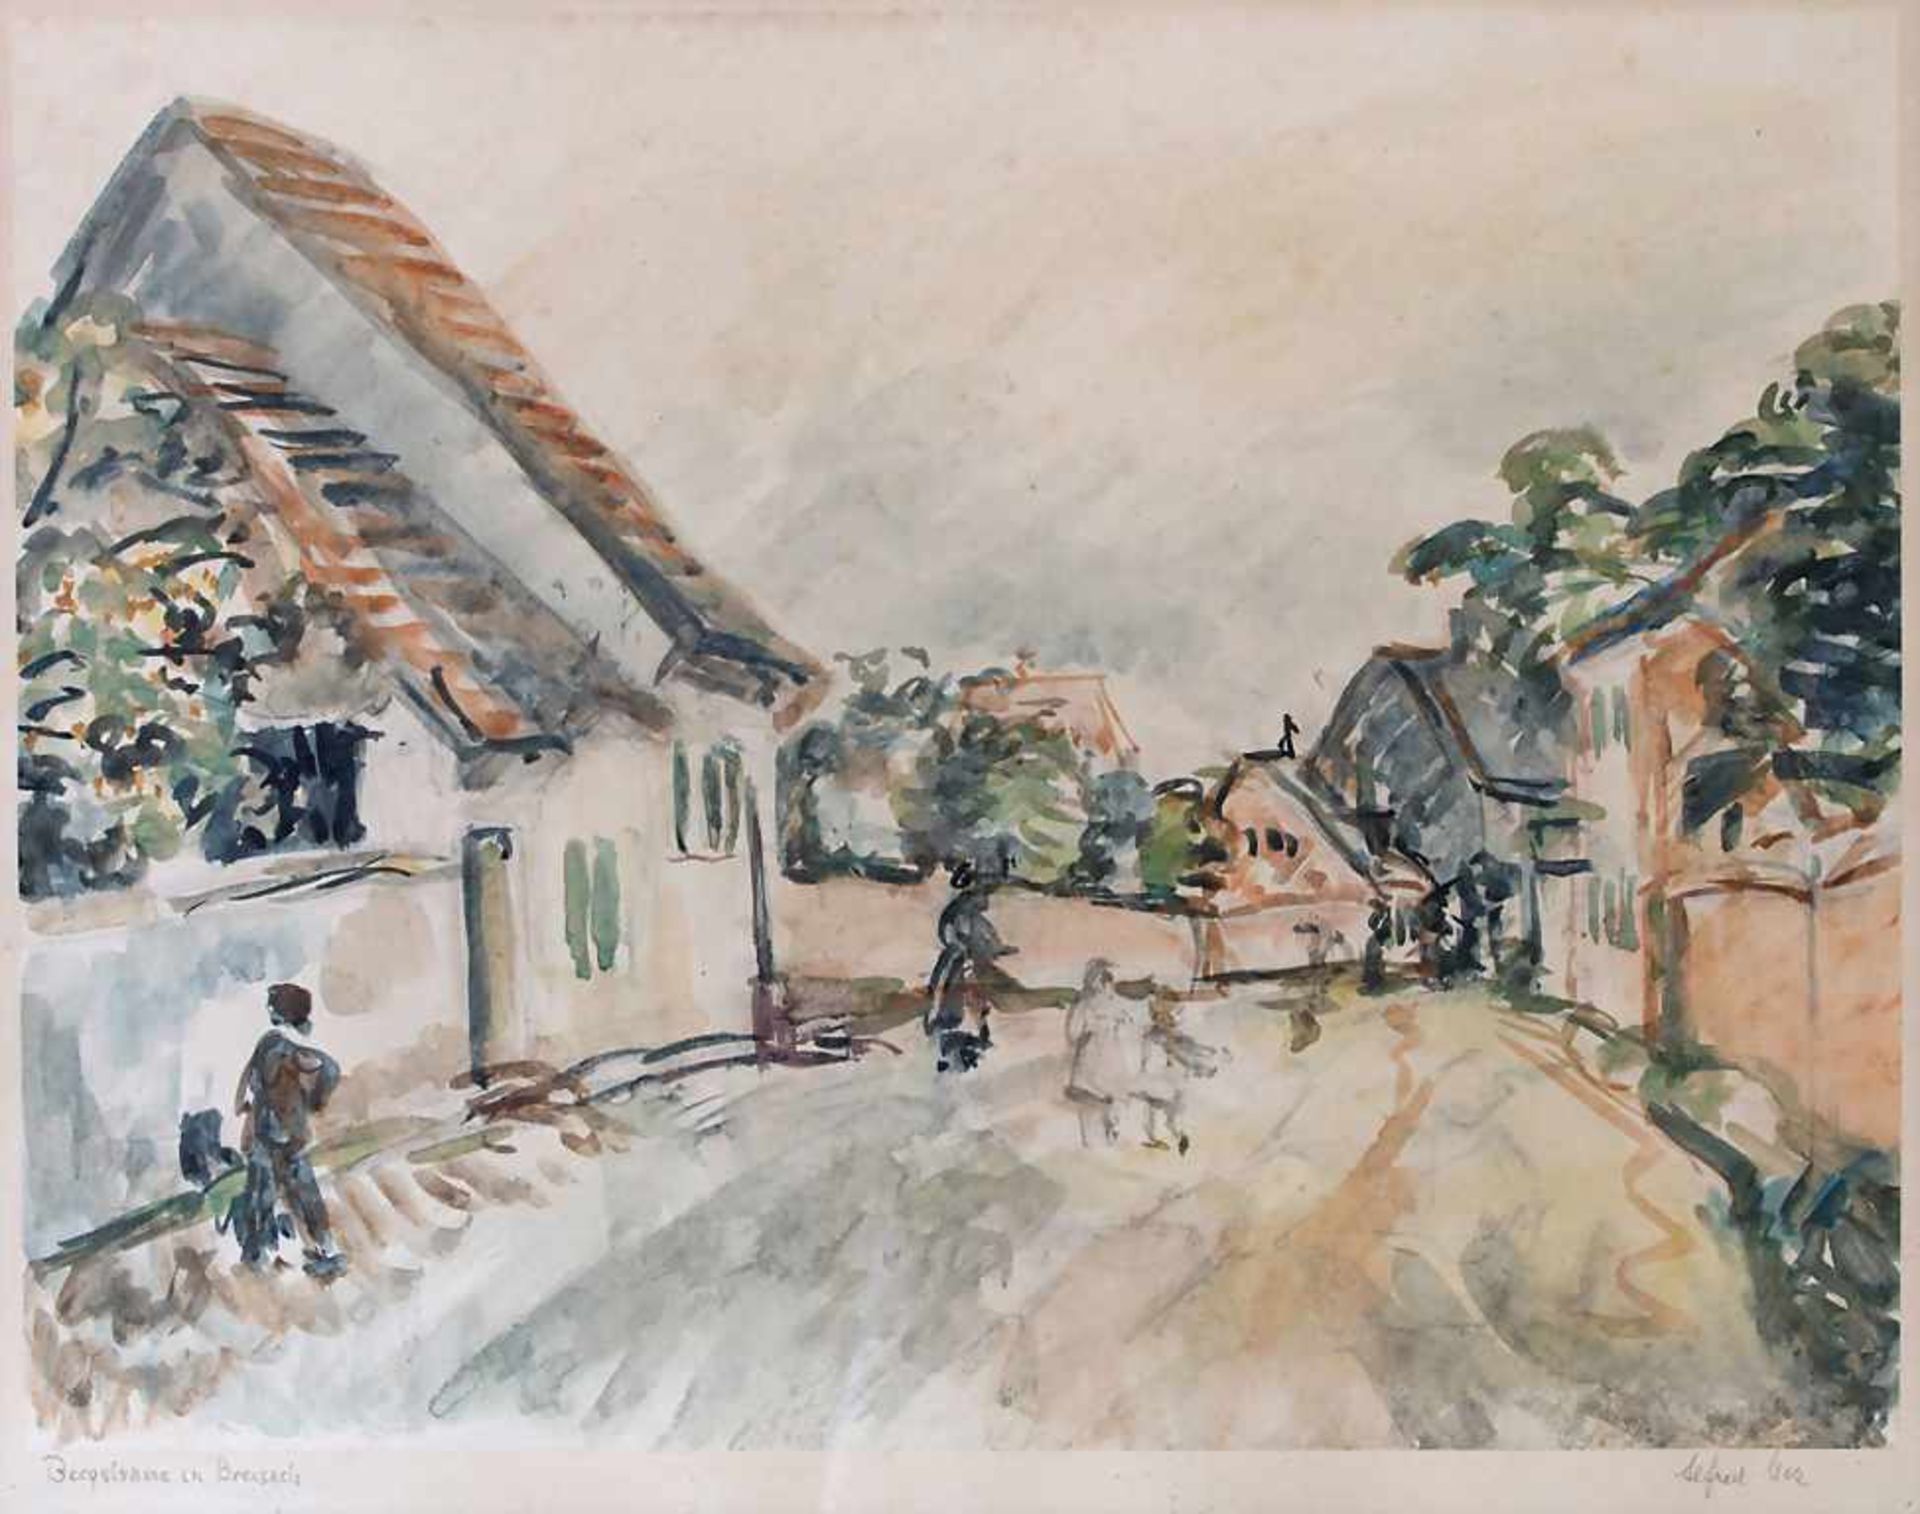 Alfred Mez (1887-1955), 'Bergstraße in Breisach' / 'A mountain road in Breisach'